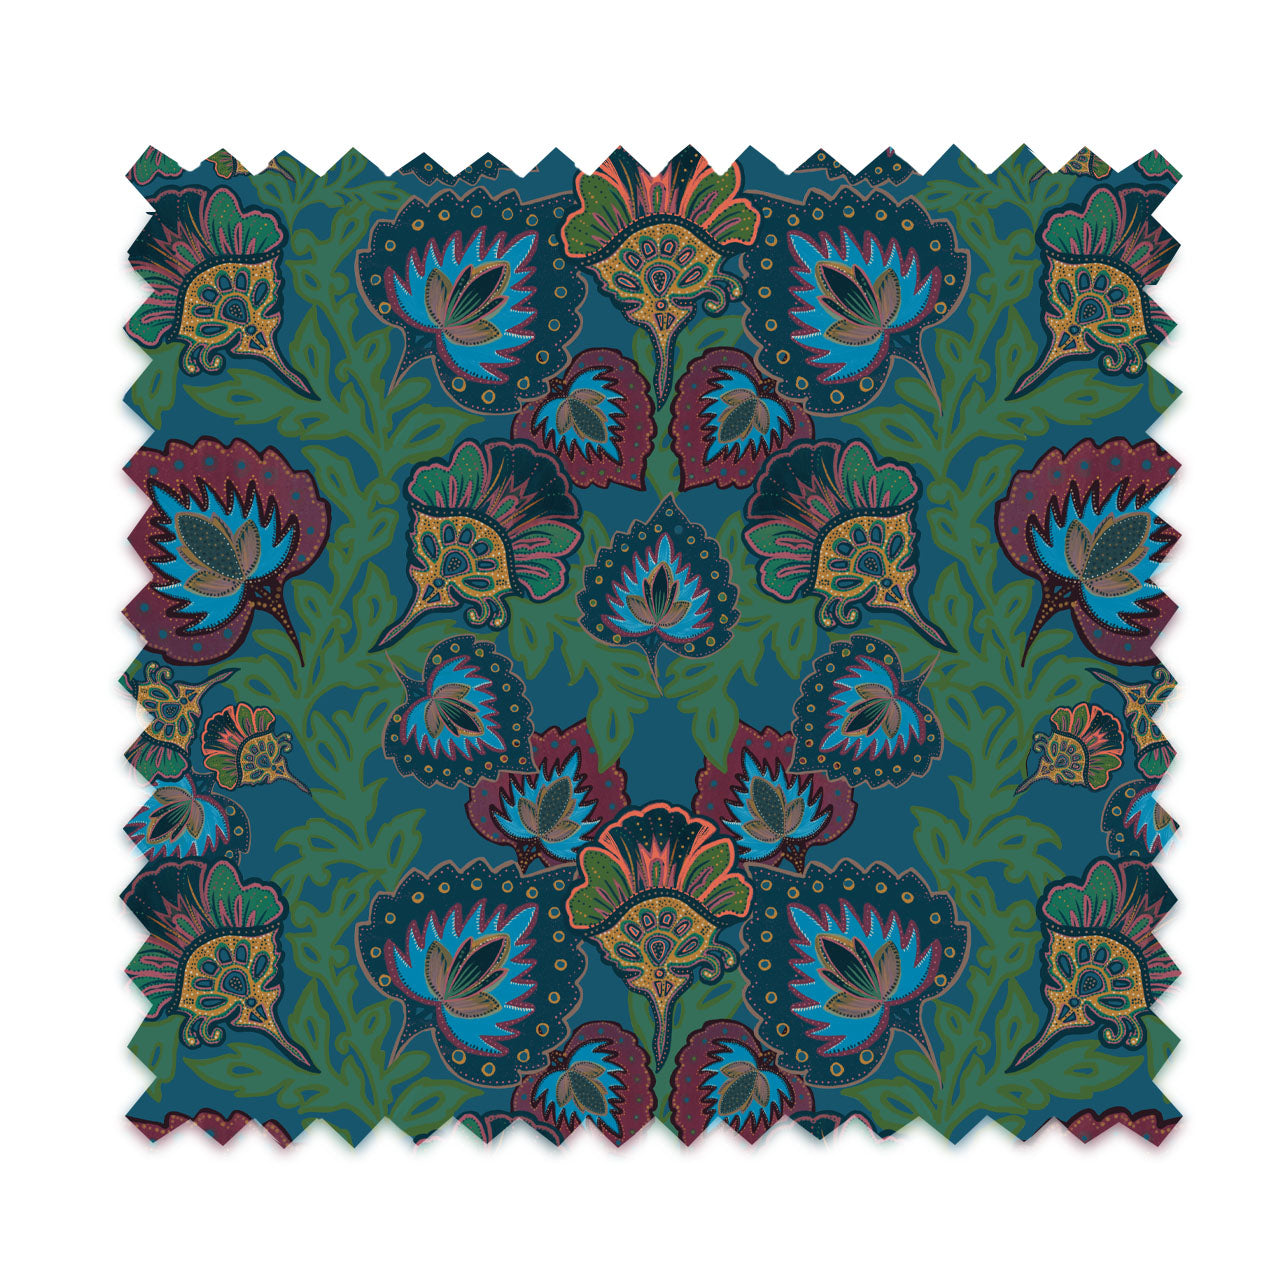 Garden of India Peacock Velvet Fabric